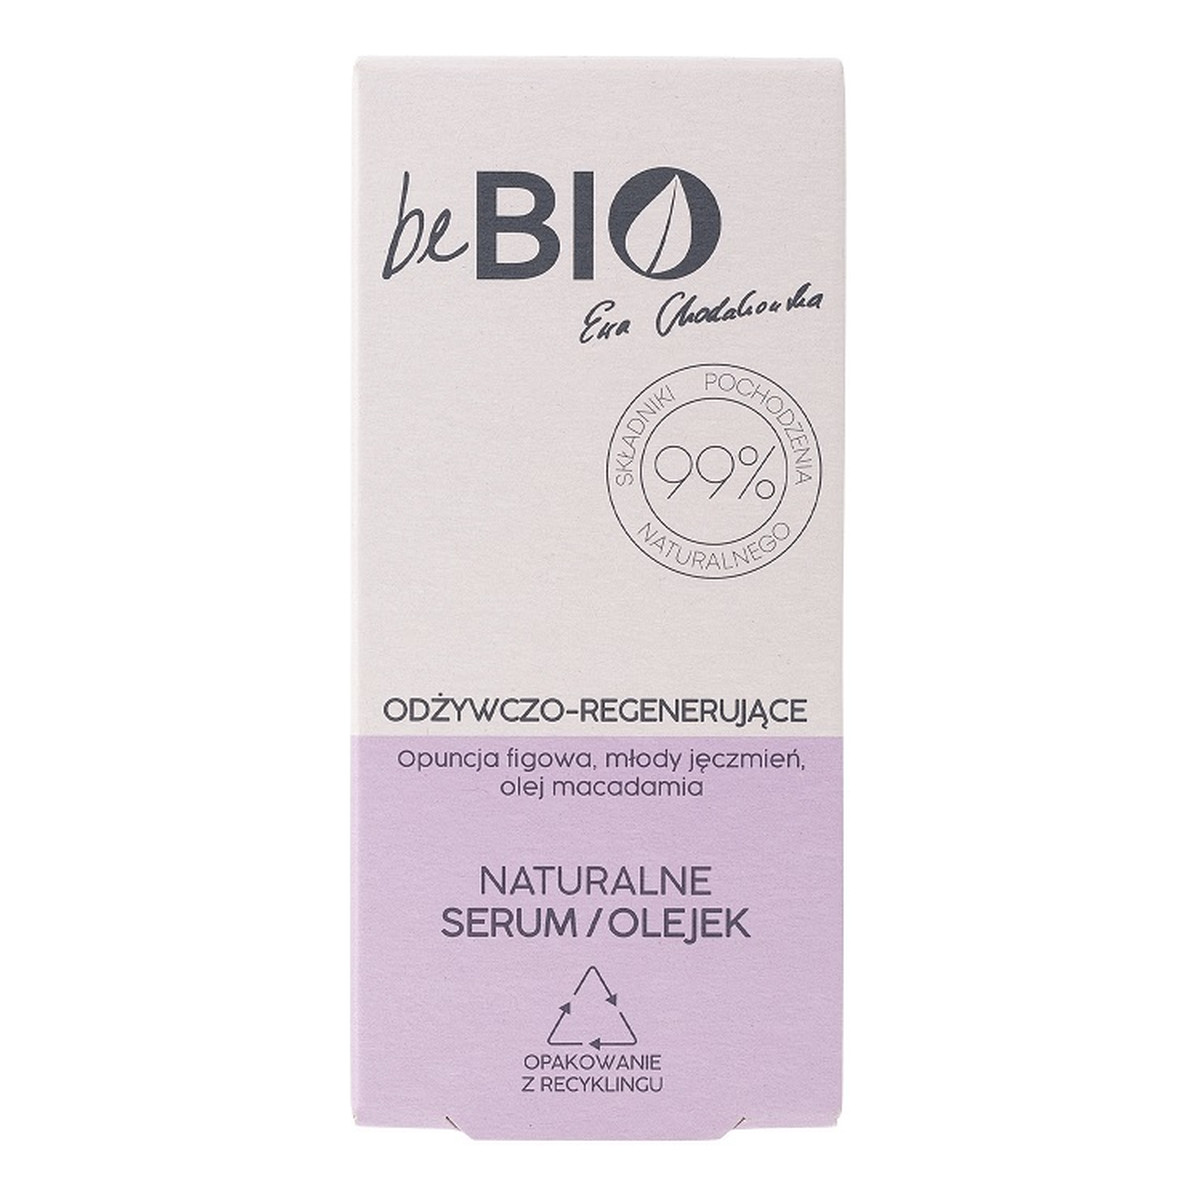 Be Bio Ewa Chodakowska Naturalne serum/olejek do twarzy odżywczo-regenerujące 30ml